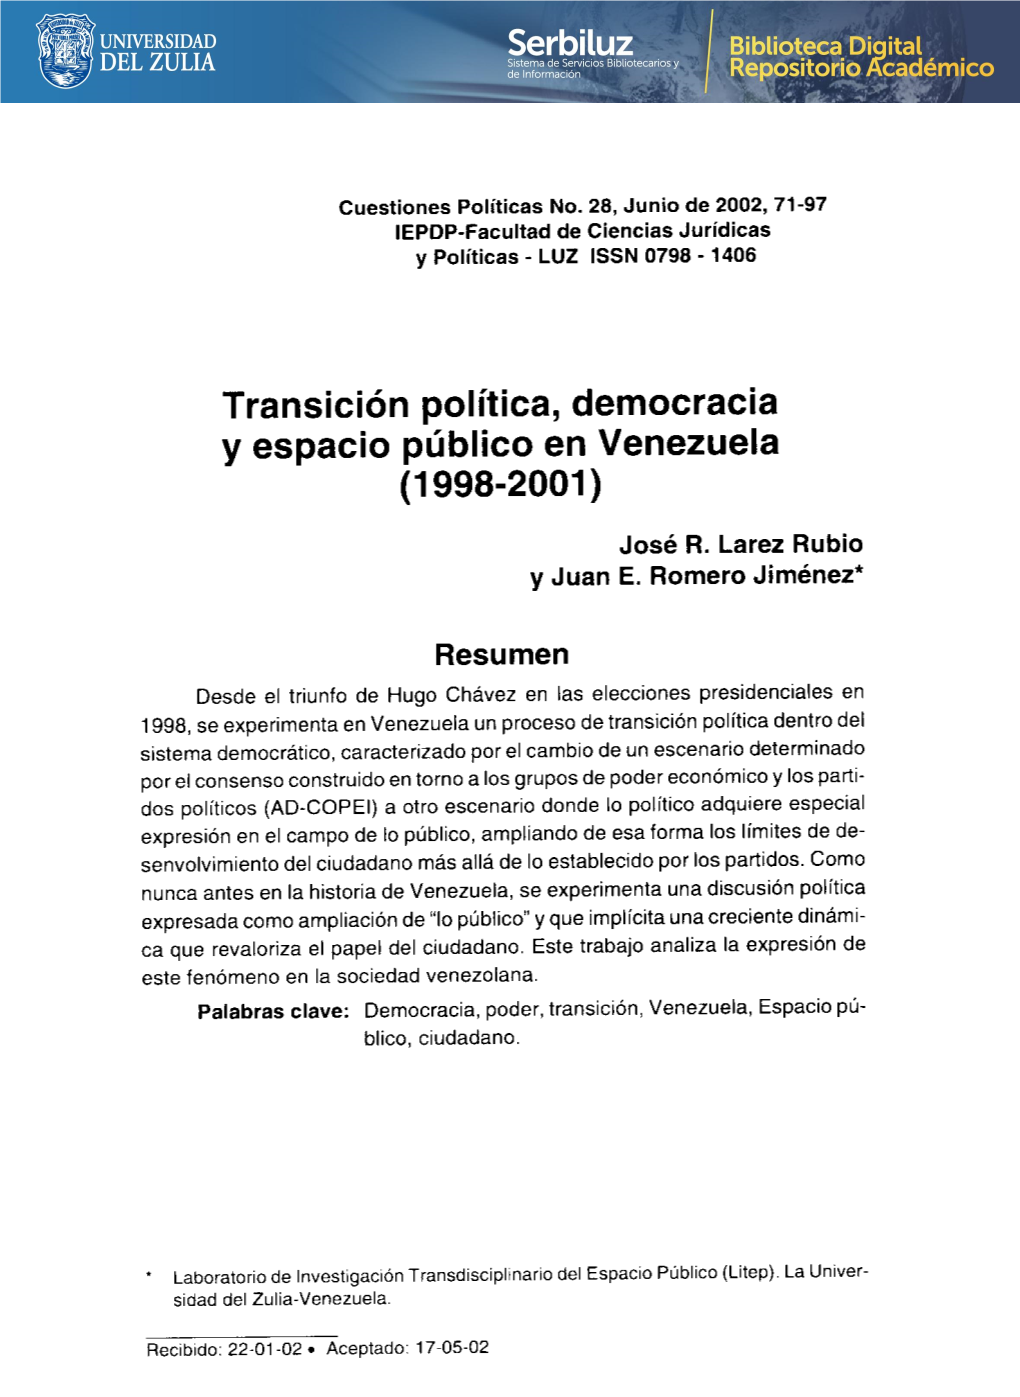 Transición Política, Democracia Y Espacio Público En Venezuela (1998-2001)